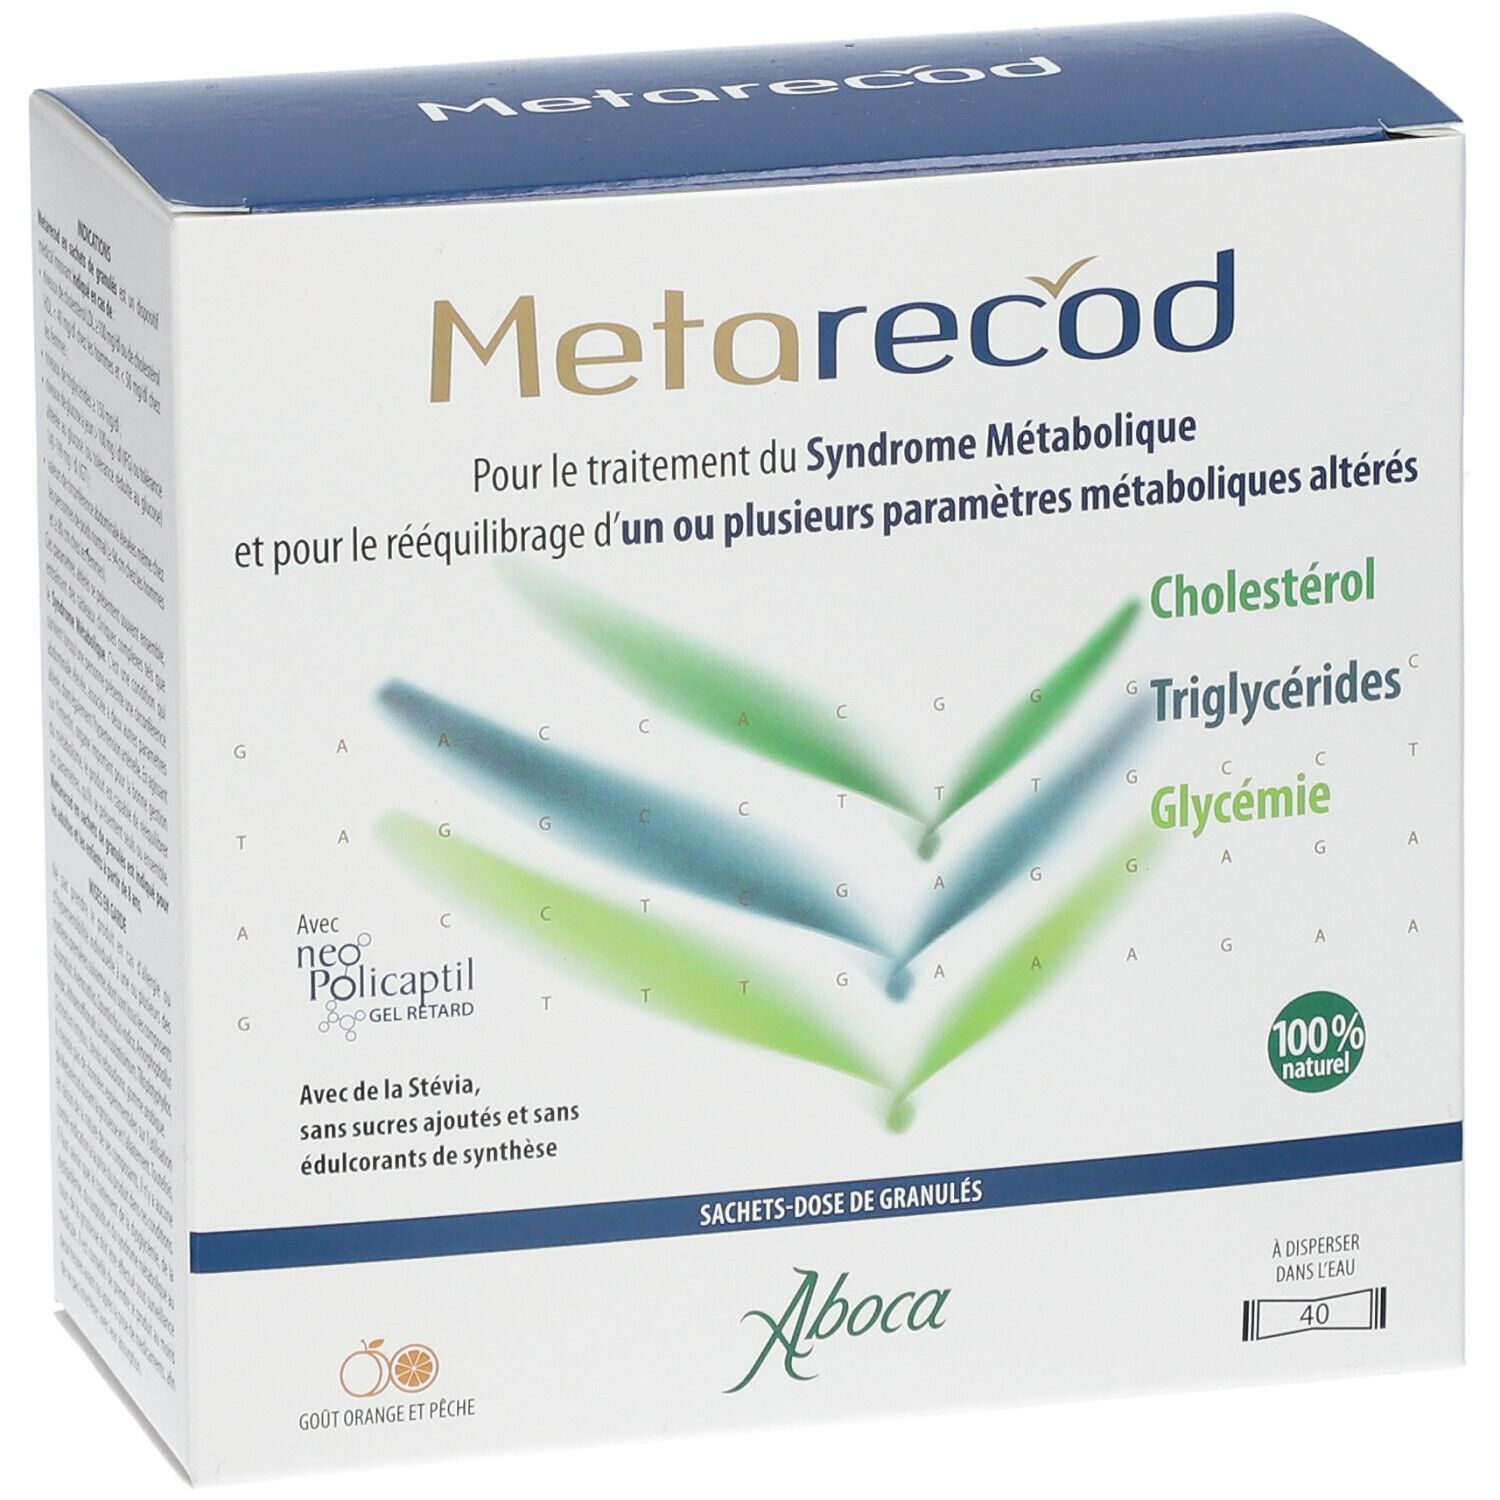 Metarecod traitement du syndrome métabolique Aboca - cholestérol